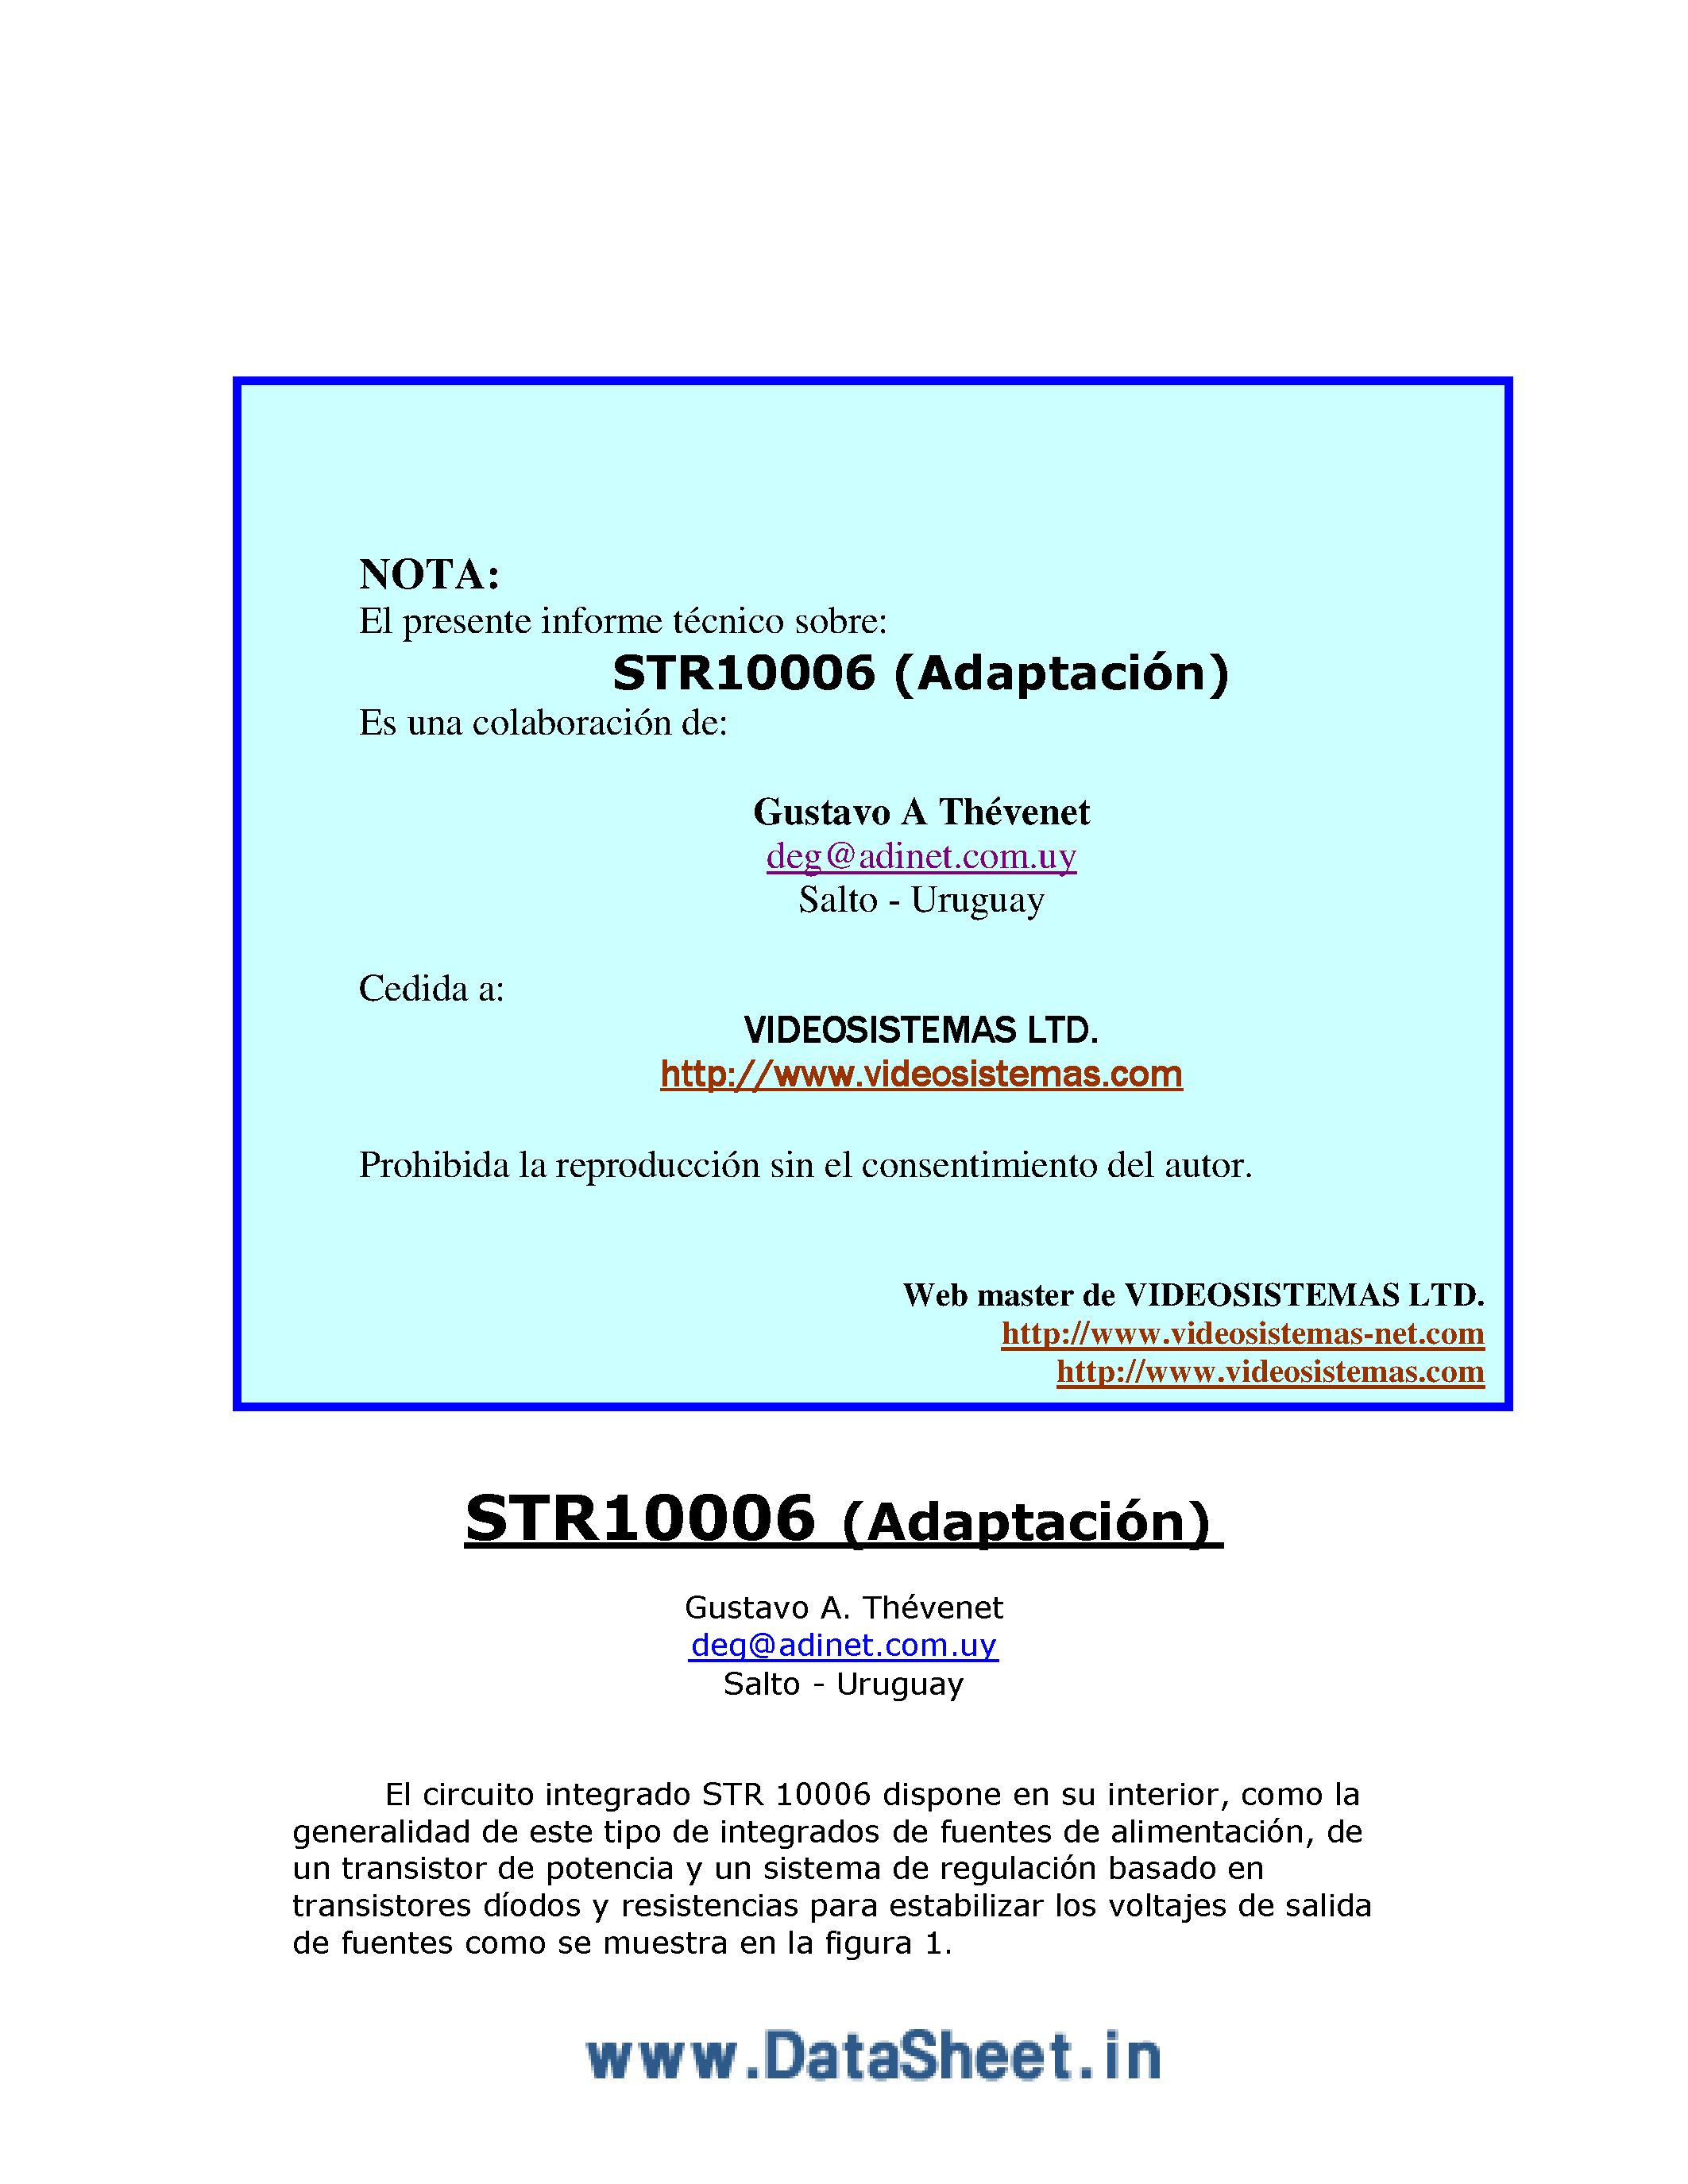 Datasheet STR10006 - Una forma Ingeniosa de Reparar los reguladores STR 10006 y similares / procedimiento aportado por Gustavo A page 1